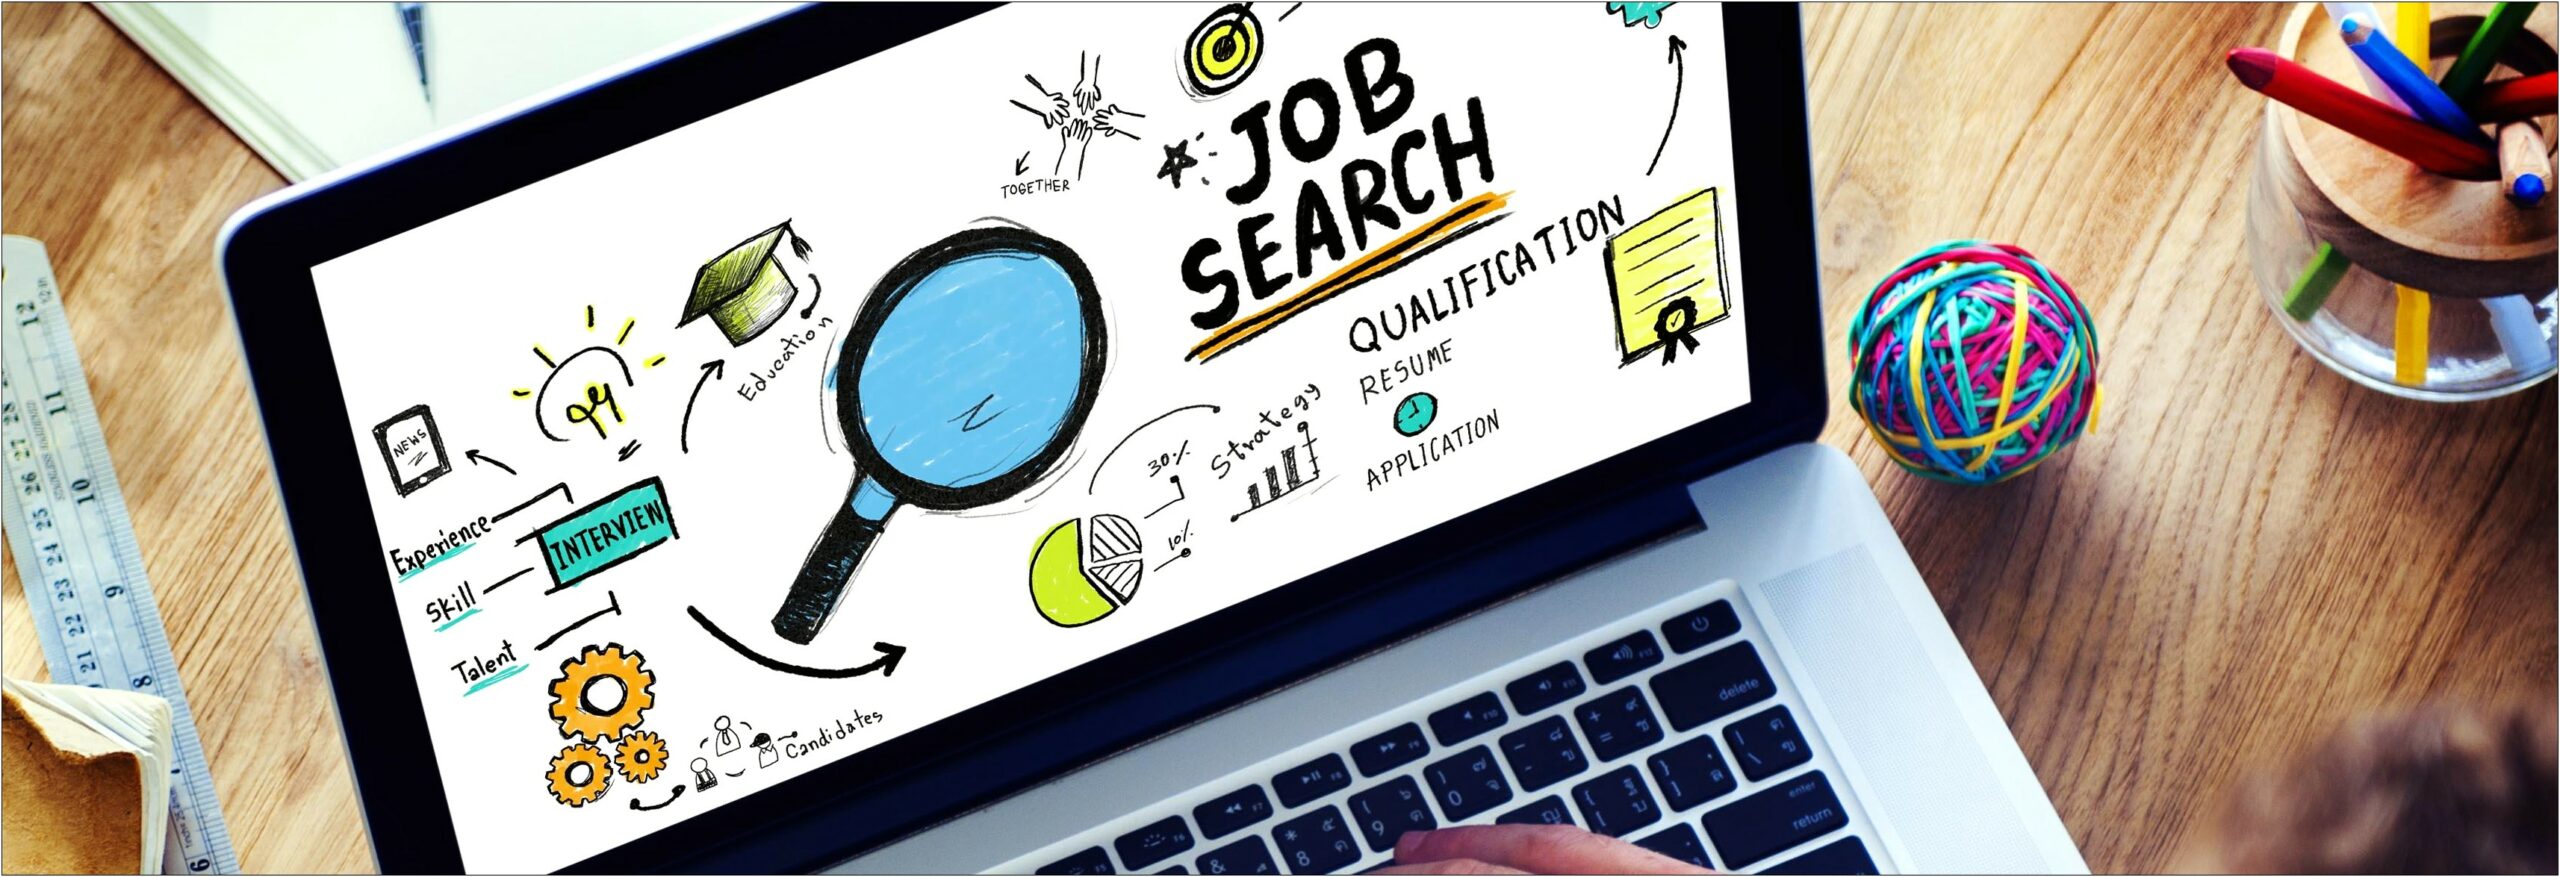 Online Job Sites For Posting Resume